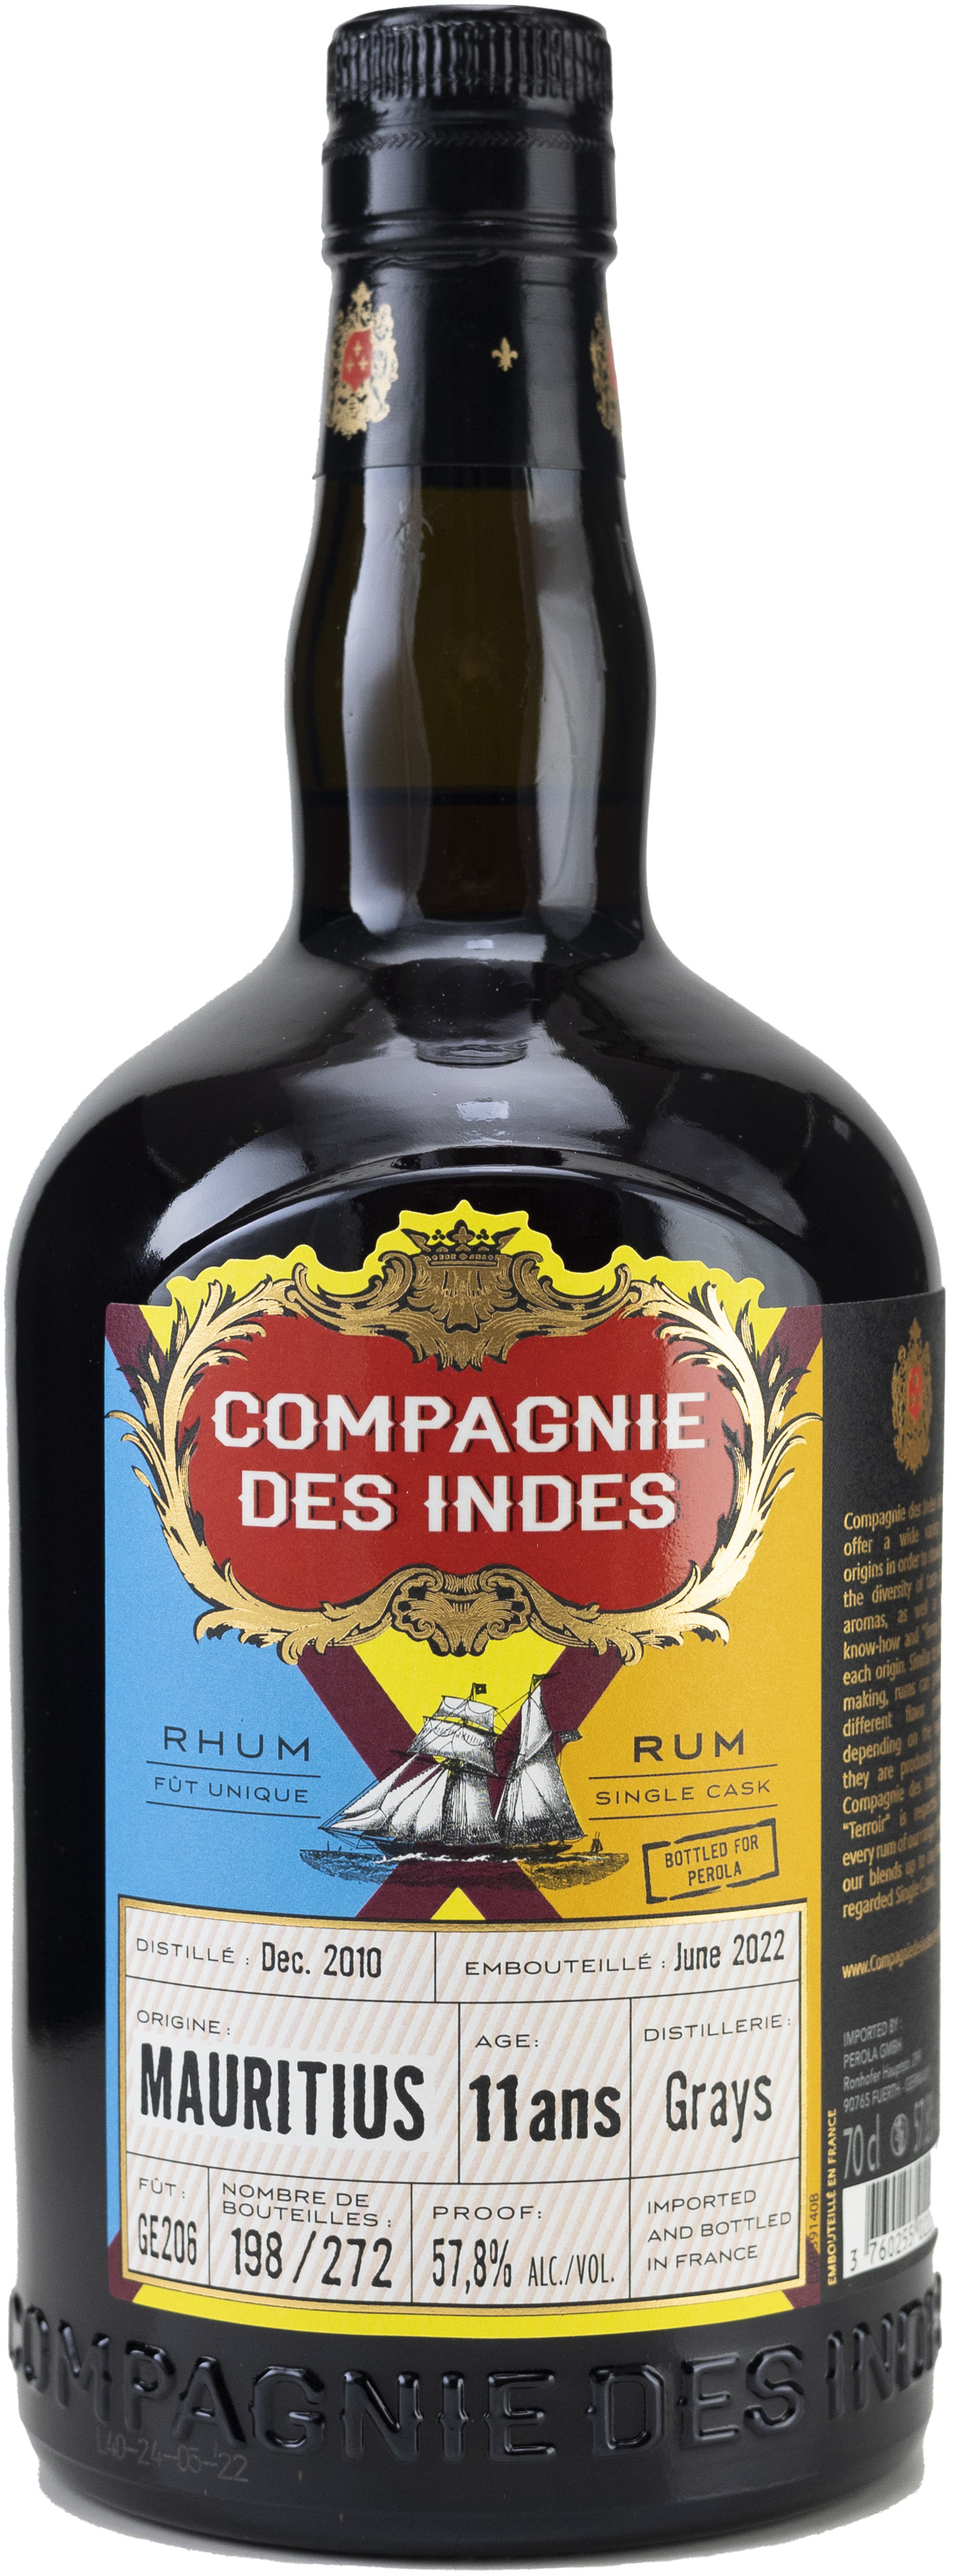 CDI Mauritius 11 Jahre Grays Ex Cognac Rum 57,8% 0,7l